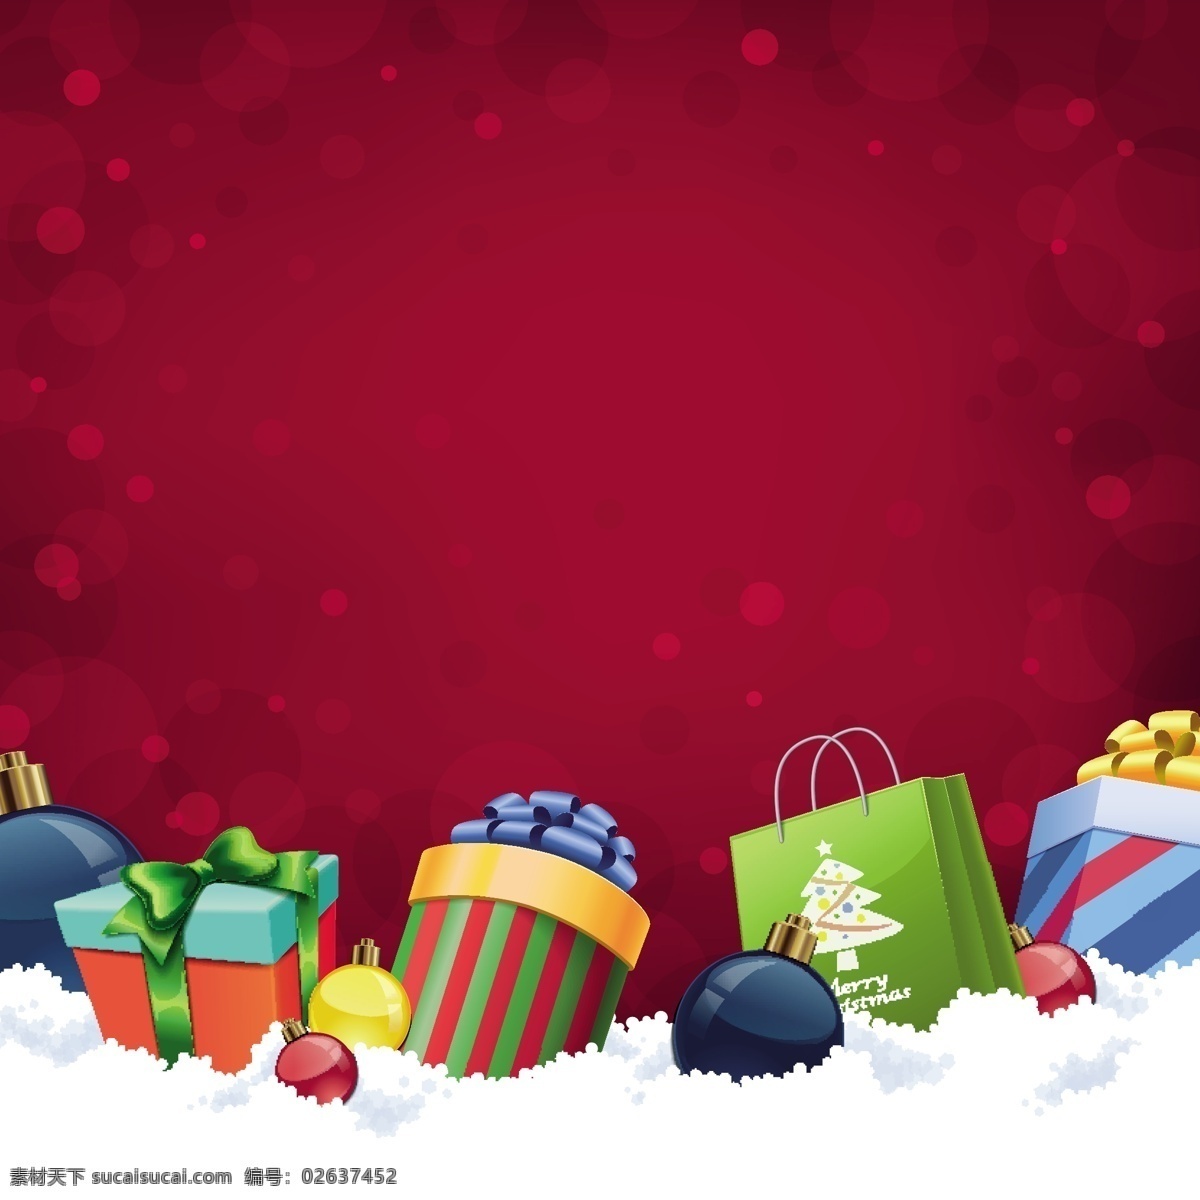 圣诞节 礼物 元素 eps格式 购物袋 礼包 精美 矢量 商场 打折 促销 海报 背景 冬季雪花 节日素材 其他节日